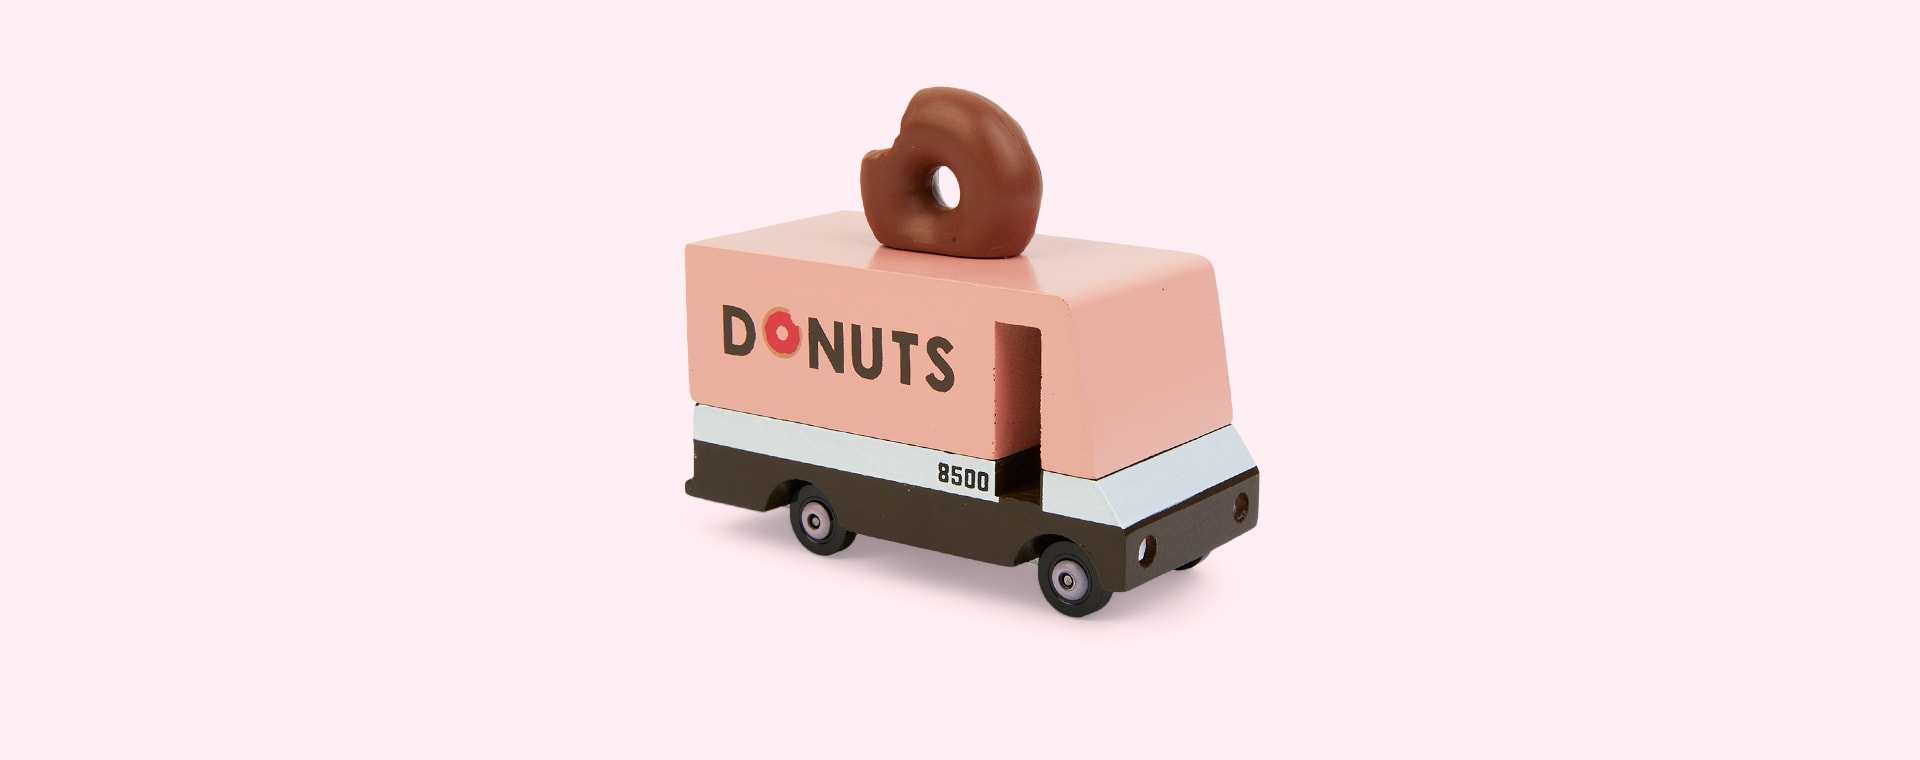 Pink Candylab Donut Van